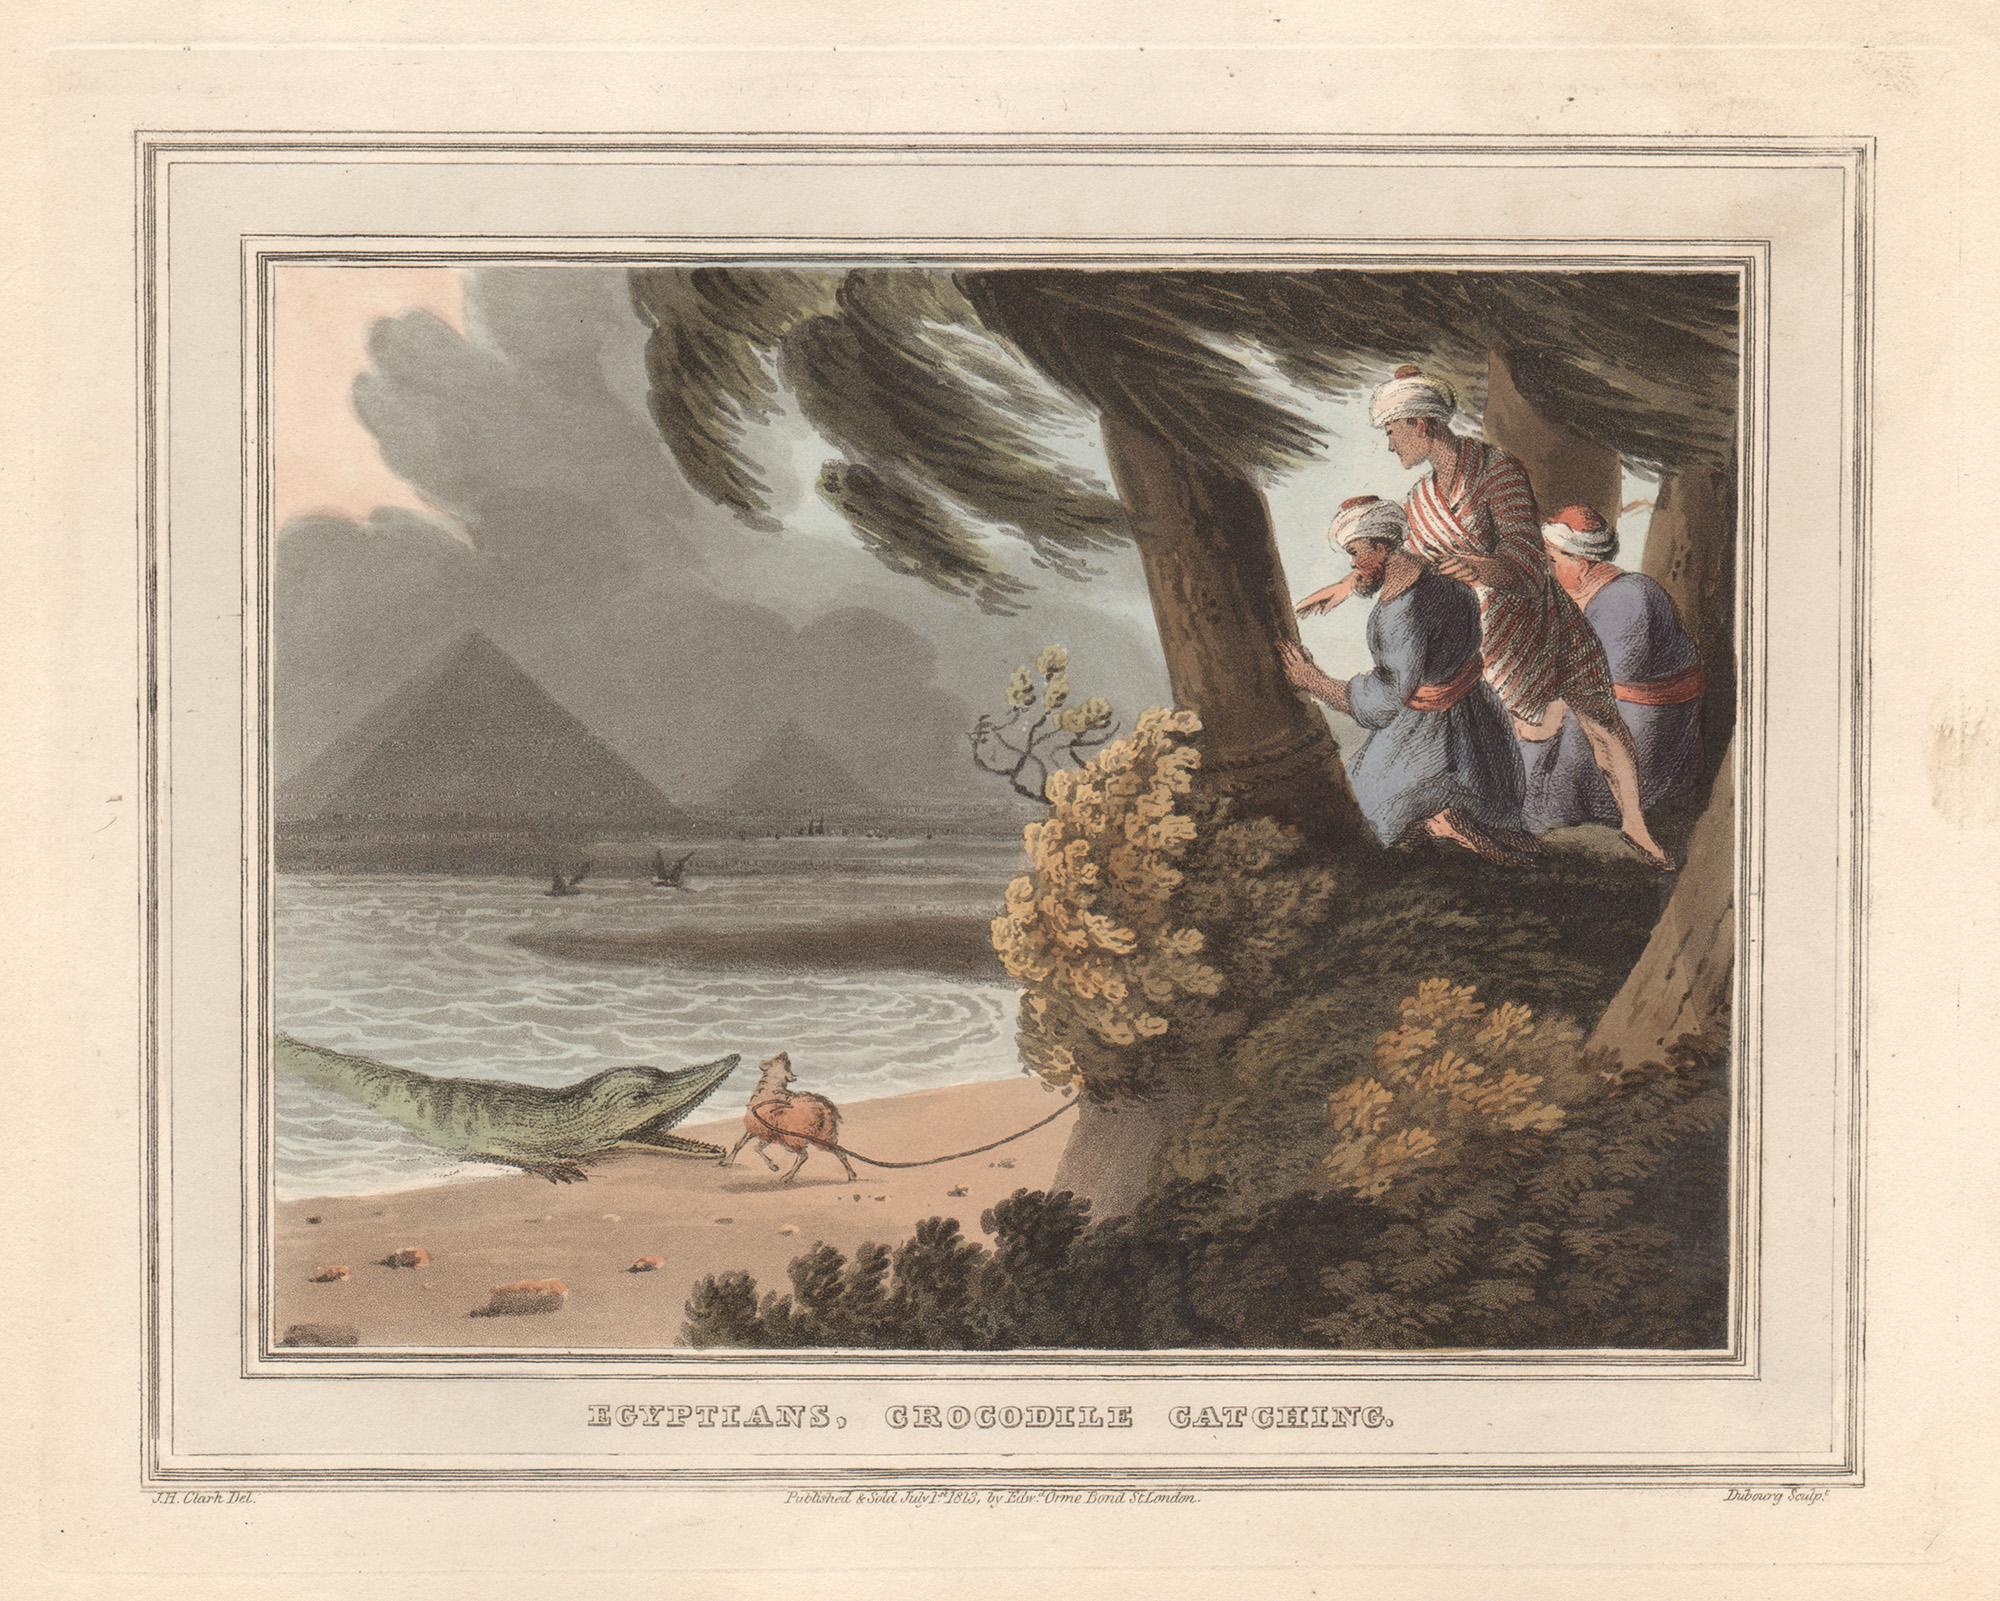 Samuel Howitt Animal Print – Ägyptische Ägypter, Krokodilcatching, Aquatinta-Gravur- Jagddruck, 1813